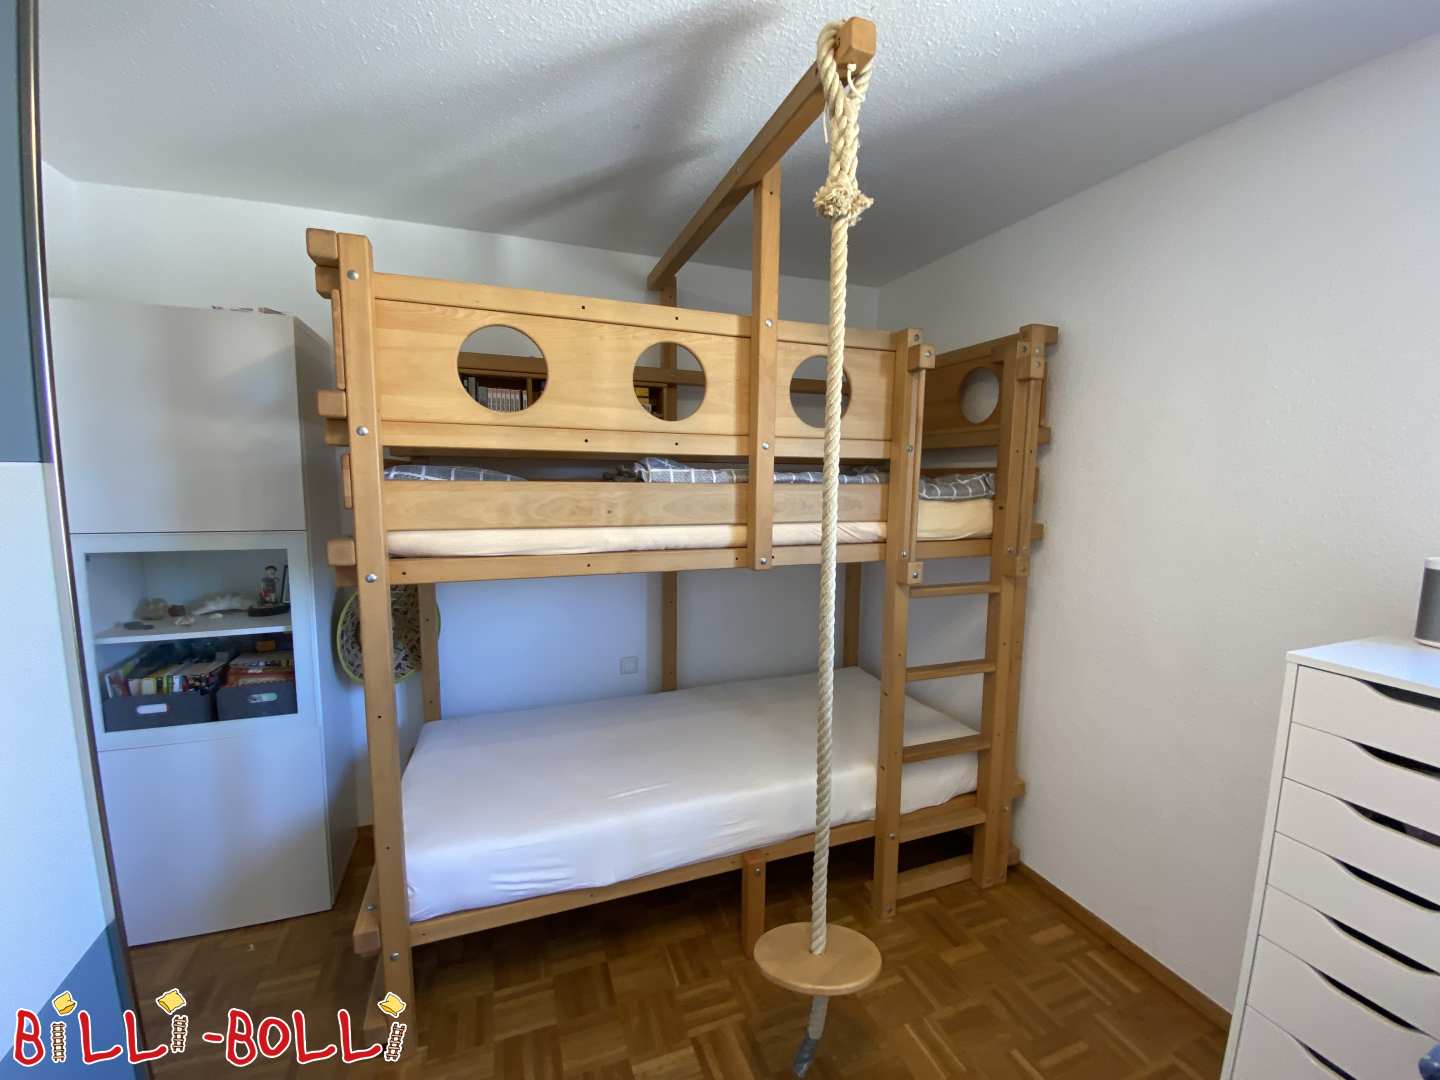 मचान बिस्तर जो बच्चे के साथ बढ़ता है जिसमें एक चारपाई बिस्तर और विभिन्न अतिरिक्त में रूपांतरण सेट होता है (श्रेणी: मचान बिस्तर जो बच्चे के साथ बढ़ता है प्रयुक्त)